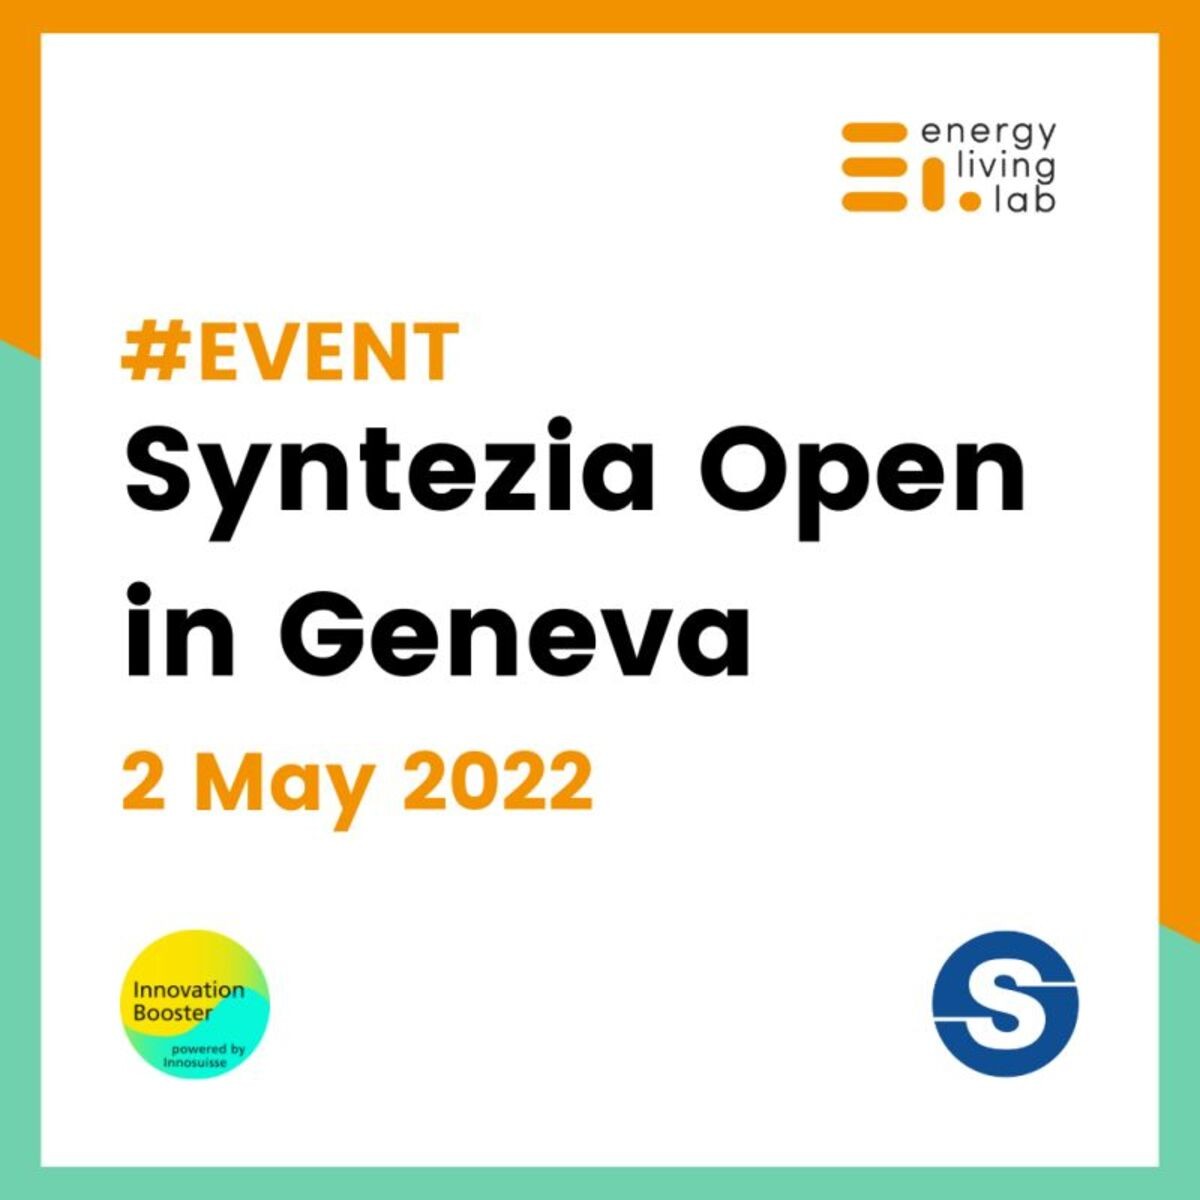 Syntezia Open à Genève le 2 mai prochain